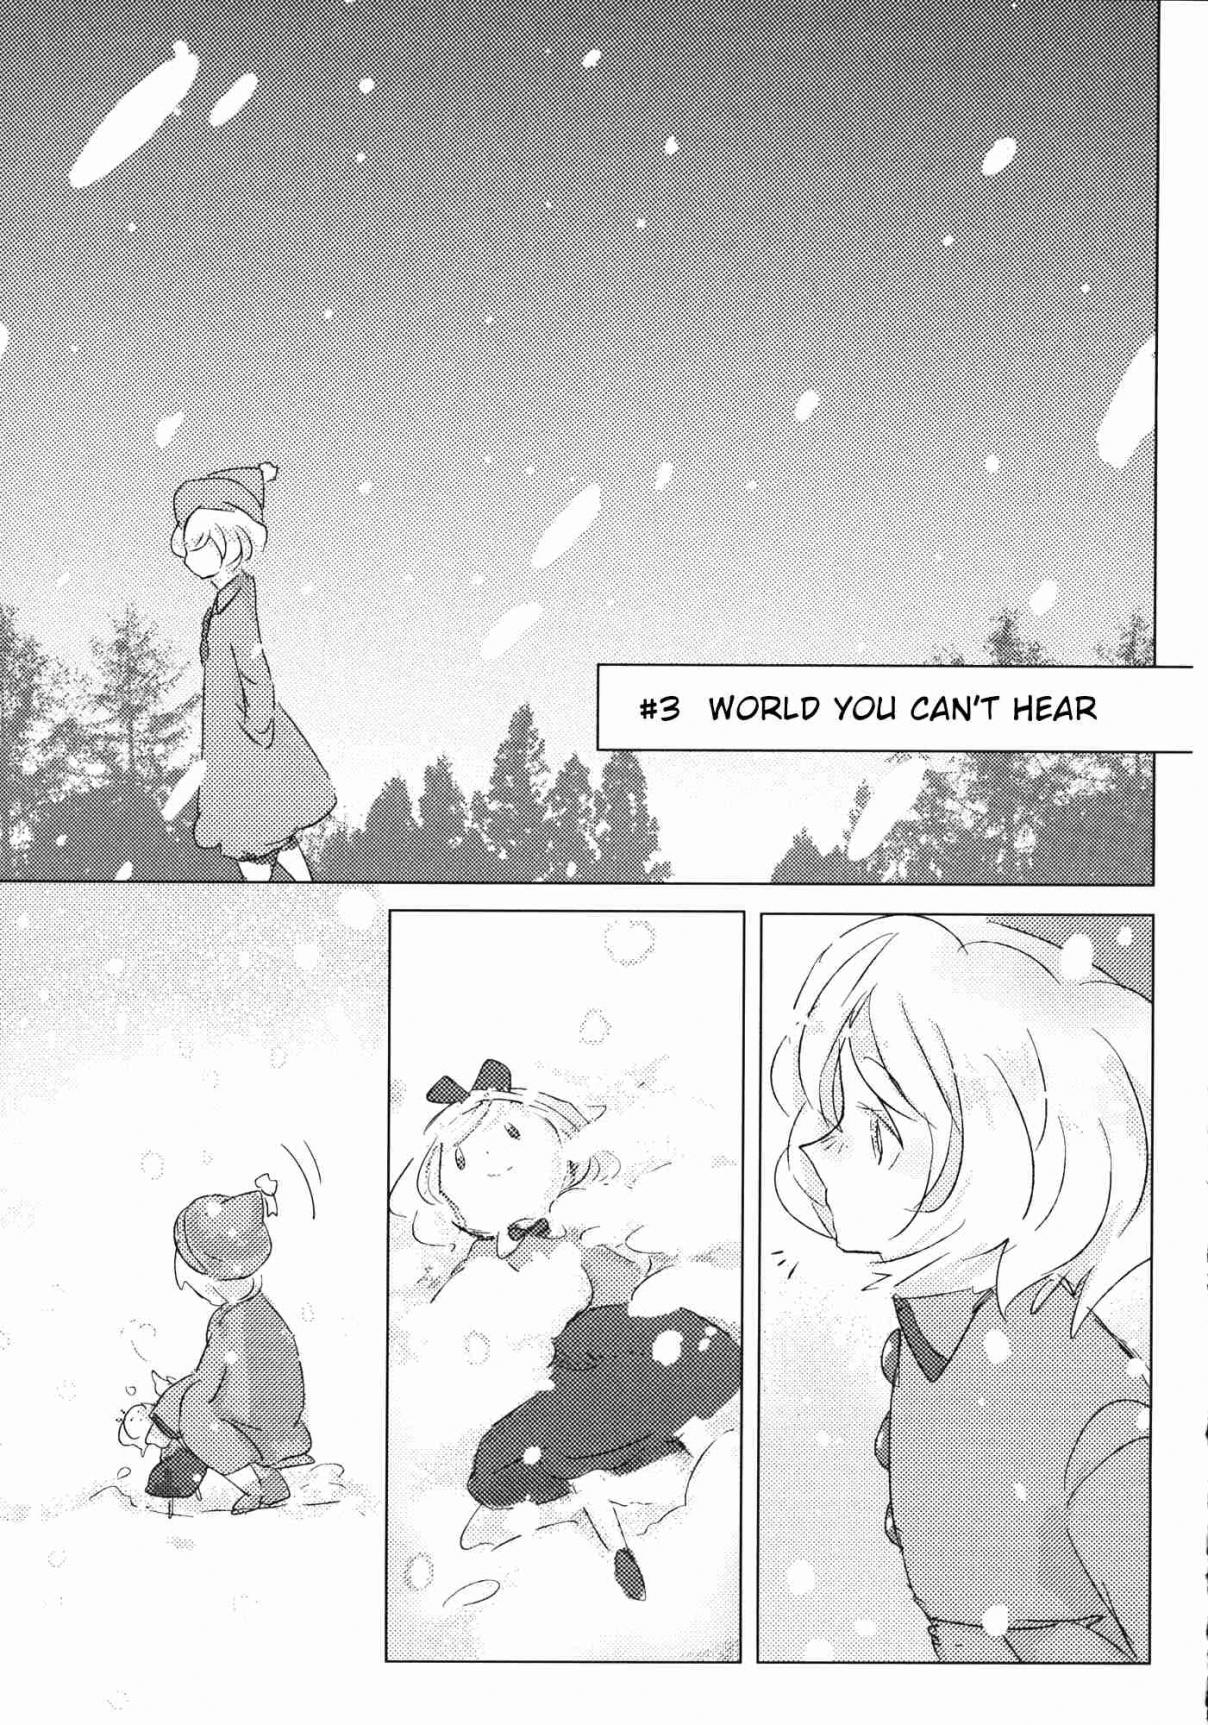 Touhou Ima Hana Kikoe (Doujinshi) Vol. 1 Ch. 3 World You Can't Hear